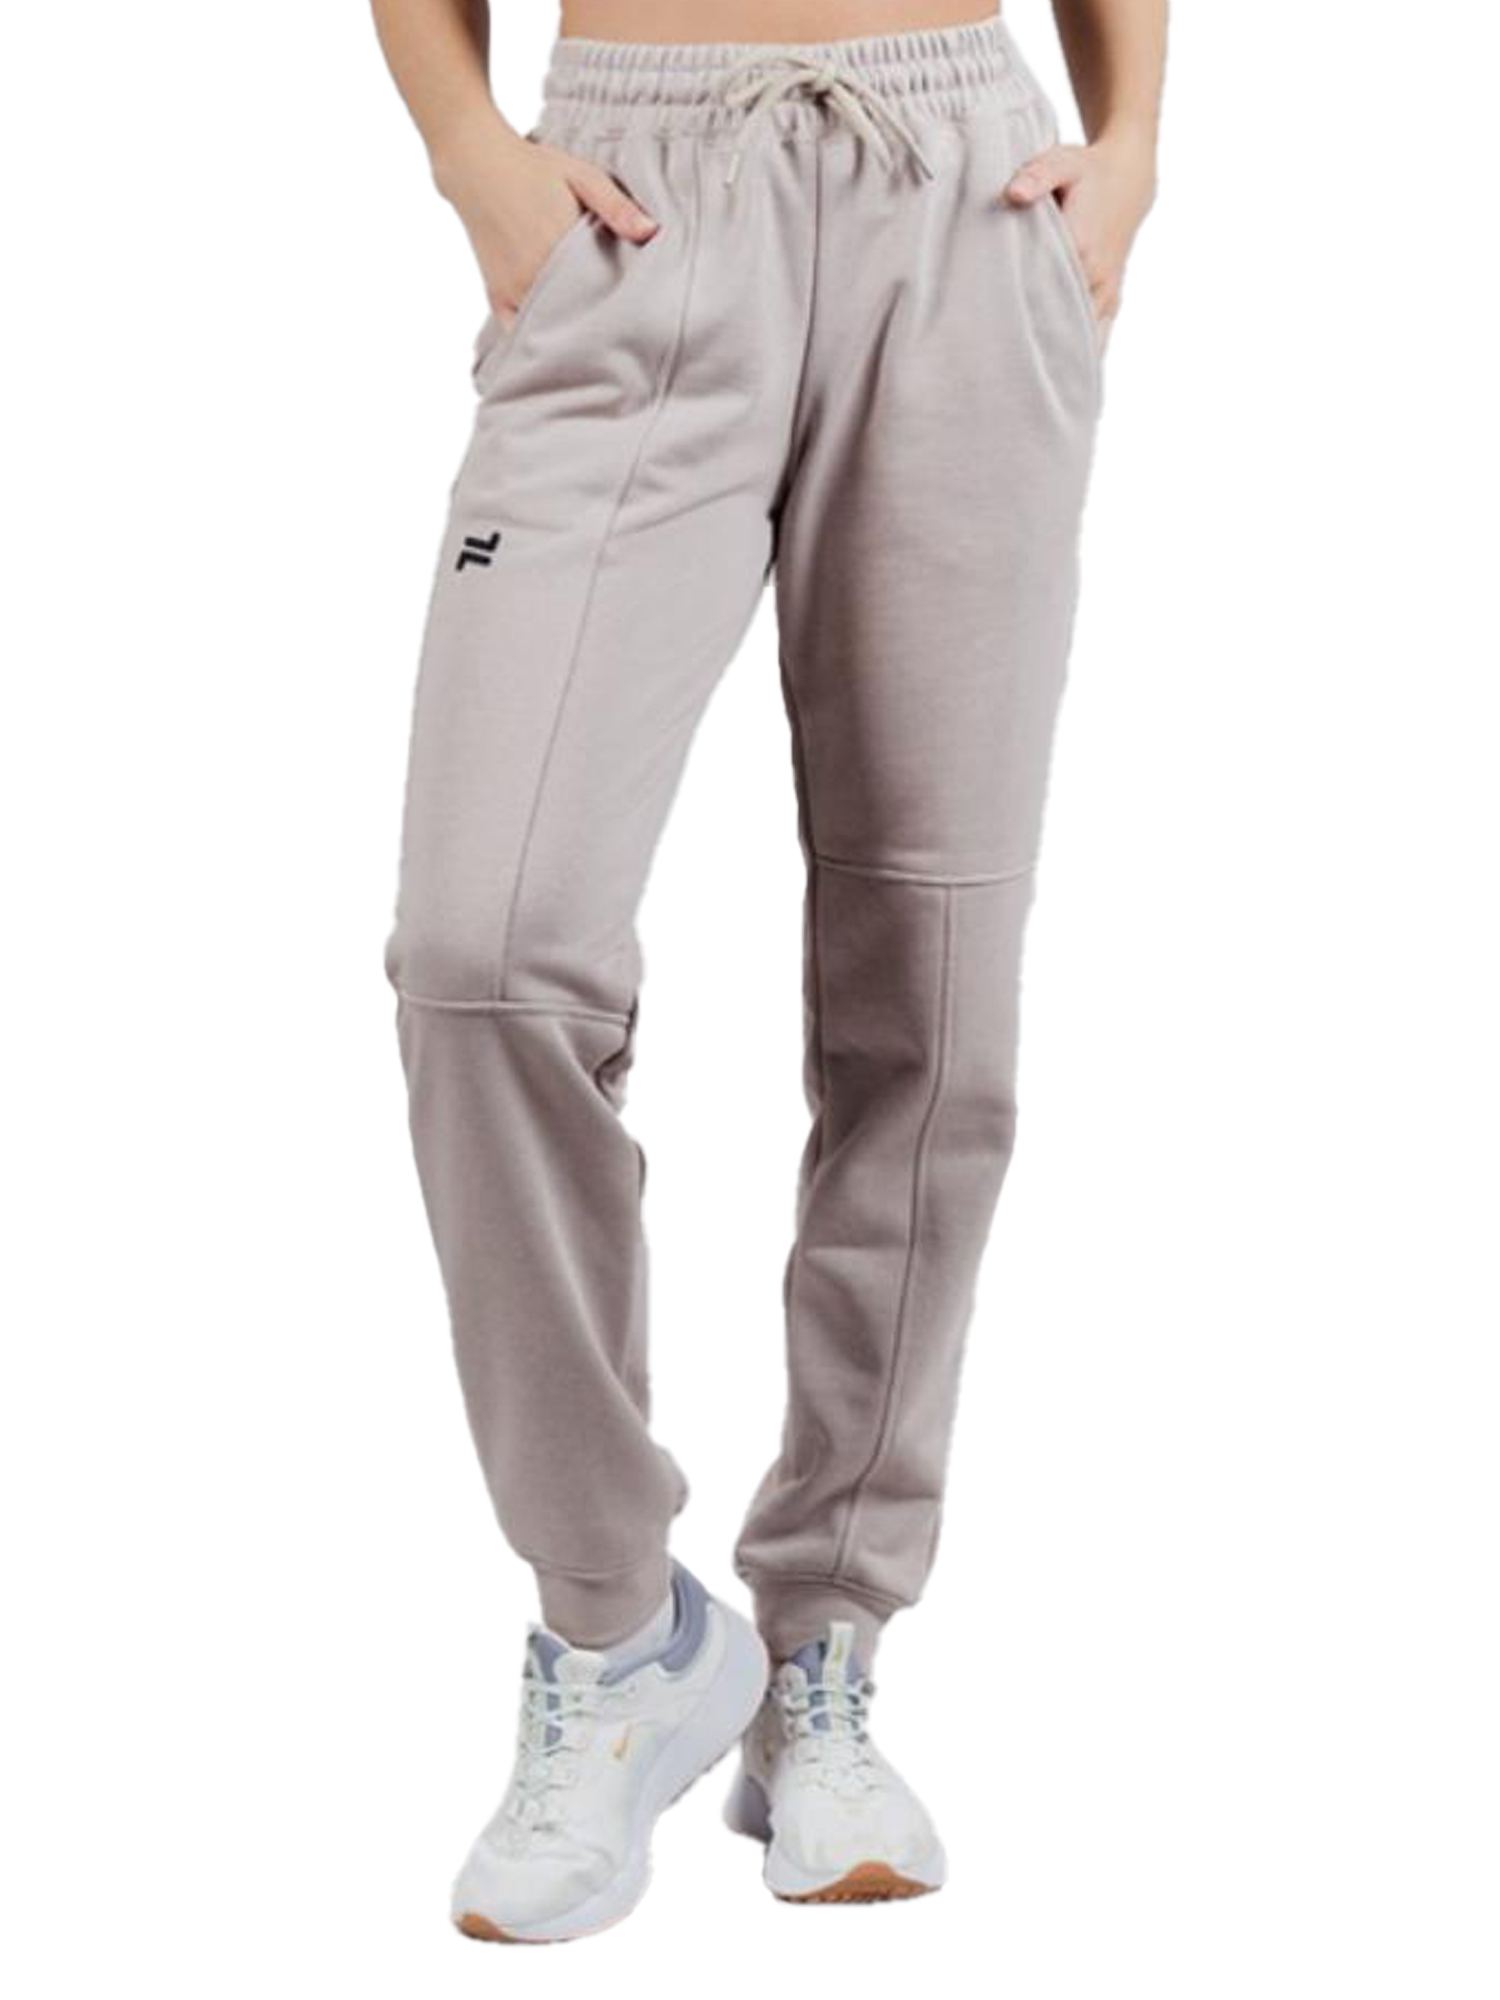 Спортивные брюки женские NordSki Outfit W бежевые 46